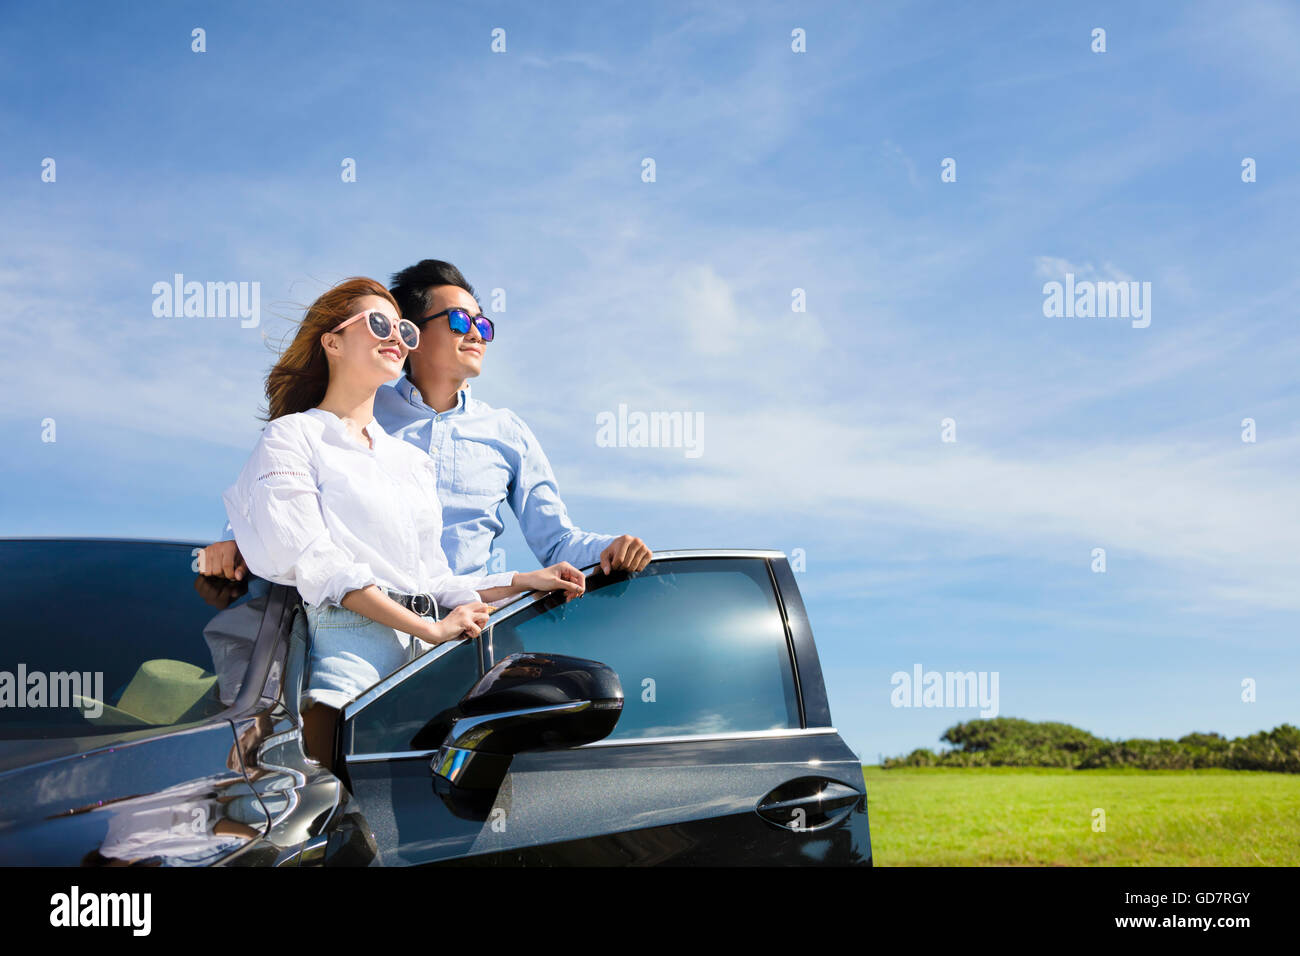 Coppia giovane in piedi vicino alla macchina e godetevi la vacanza estiva Foto Stock